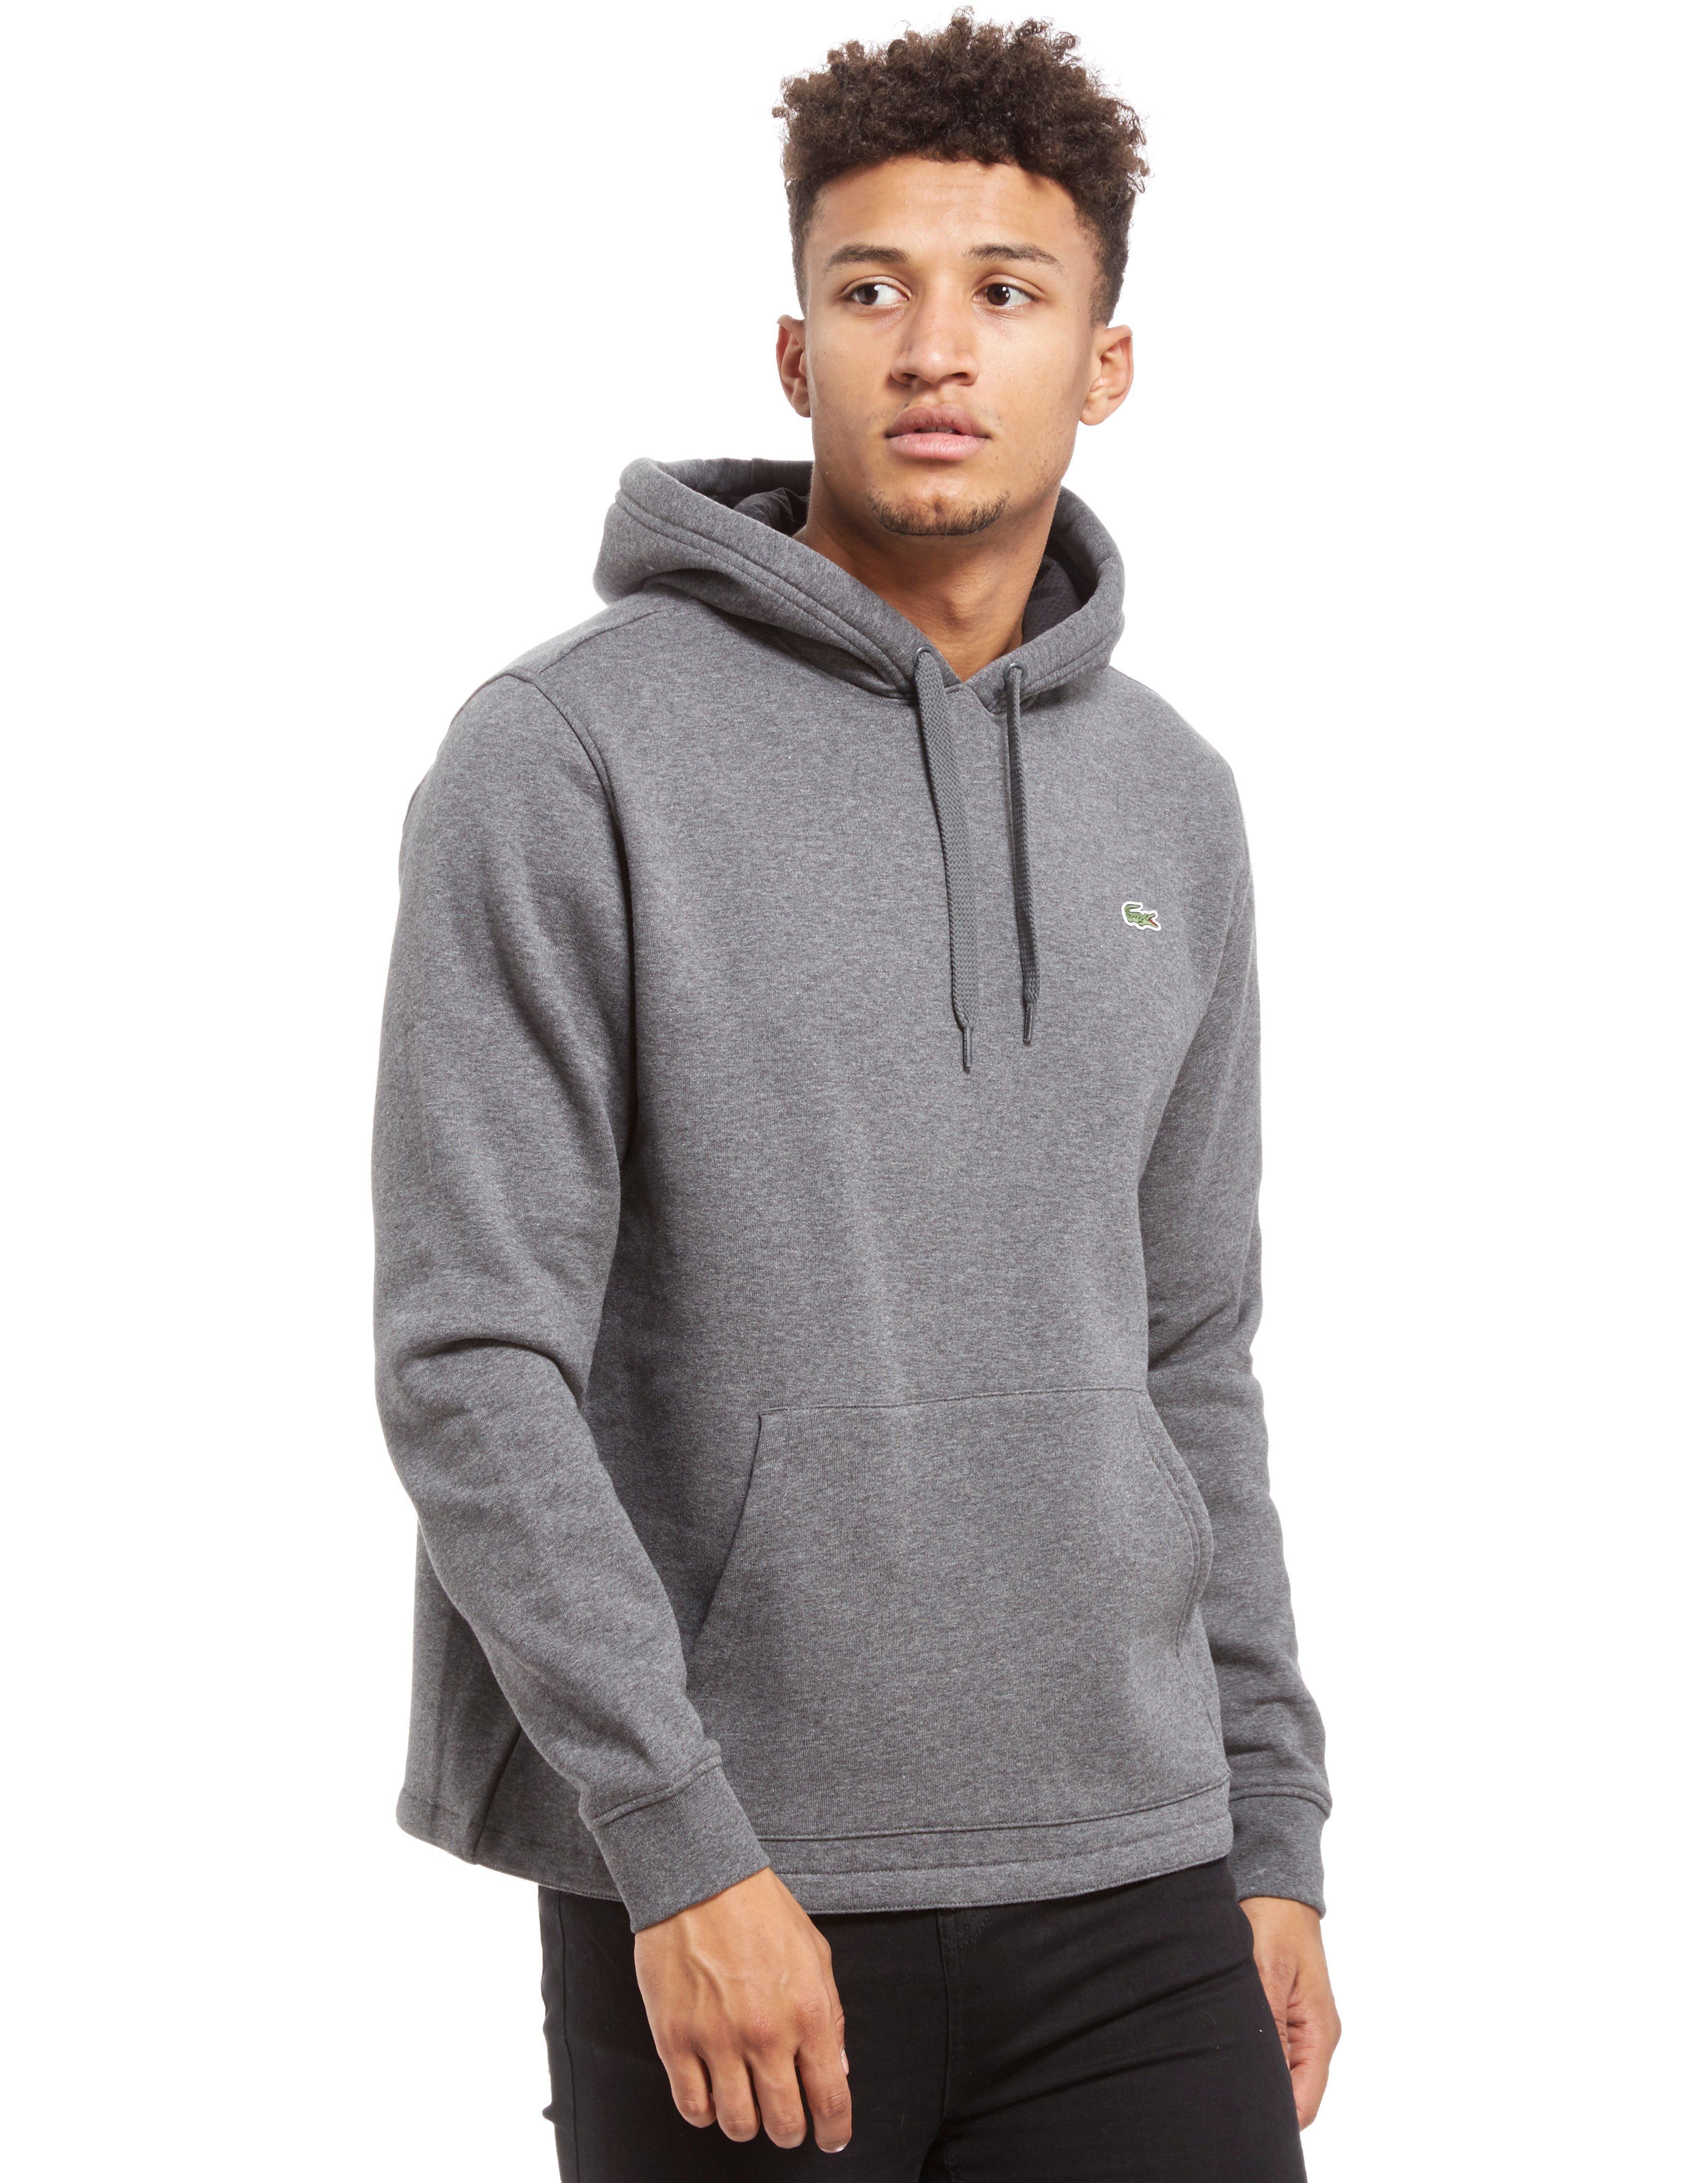 Lacoste Back Logo Fleece Hoodie in Grey (Gray) for Men - Lyst